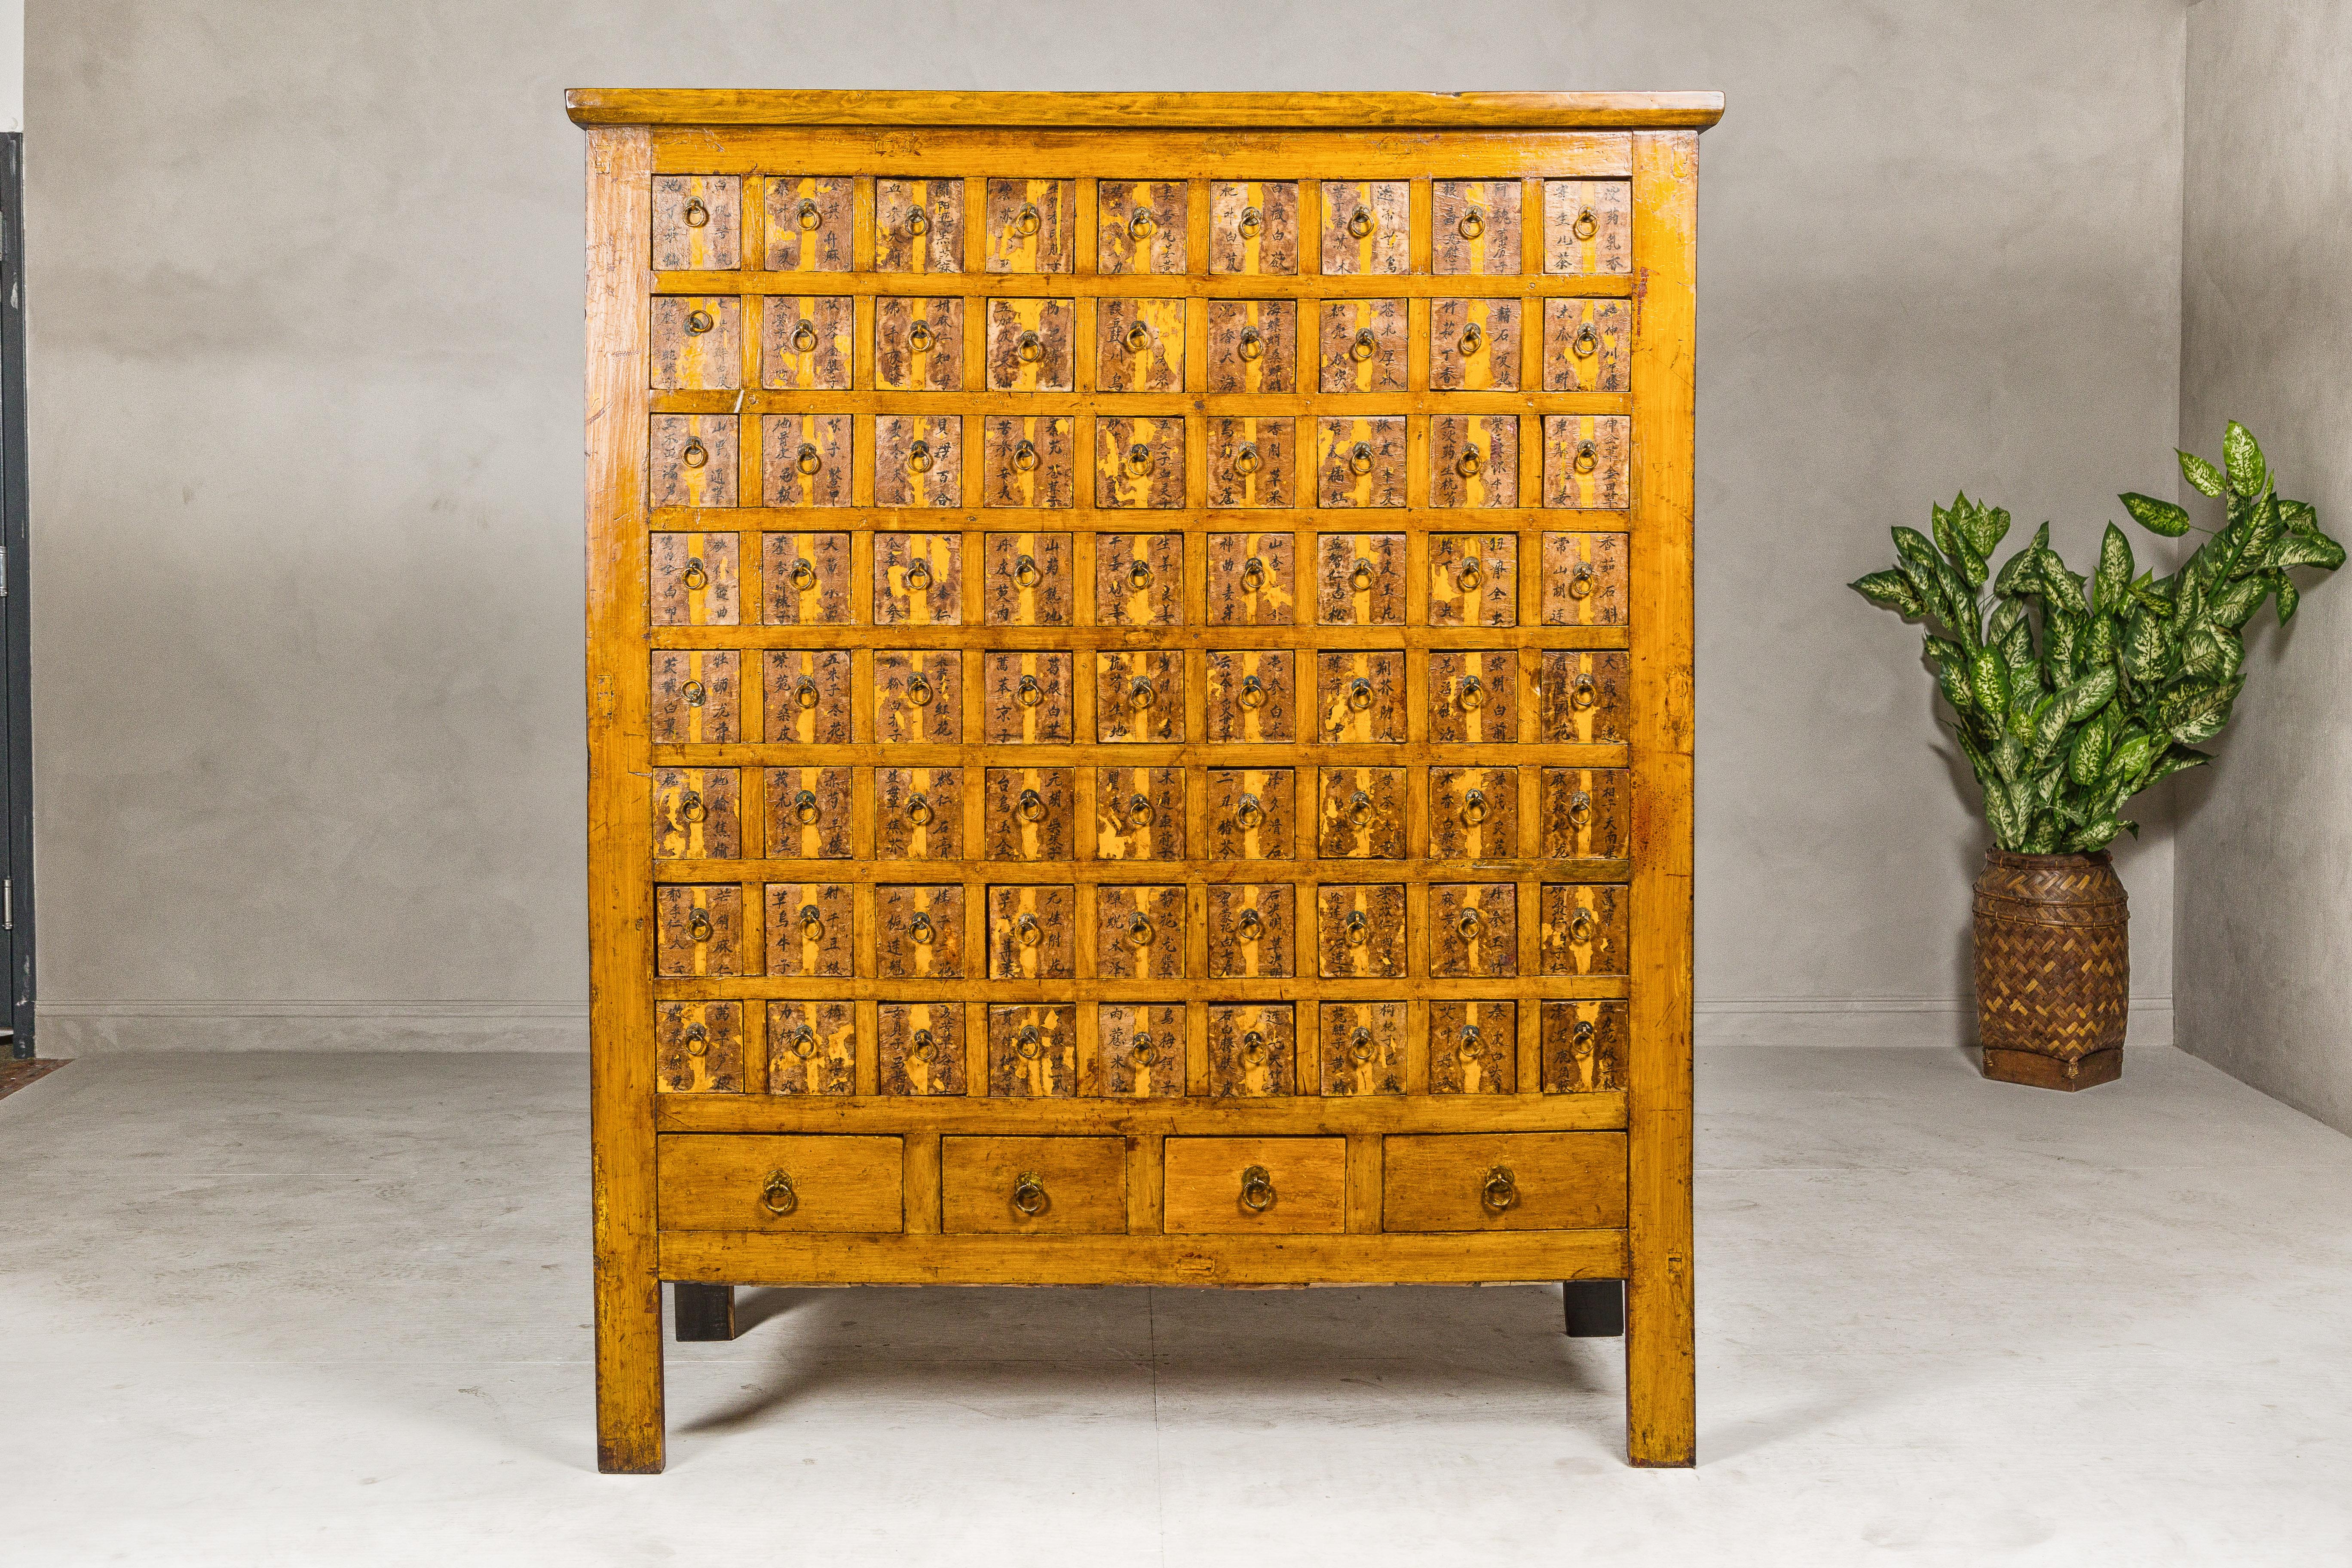 Cabinet d'apothicaire surdimensionné de la dynastie Qing, datant du XIXe siècle, comportant 72 petits tiroirs et quatre tiroirs de taille moyenne, calligraphie peinte à la main et finition laquée altérée. Cette armoire à pharmacie monumentale de la